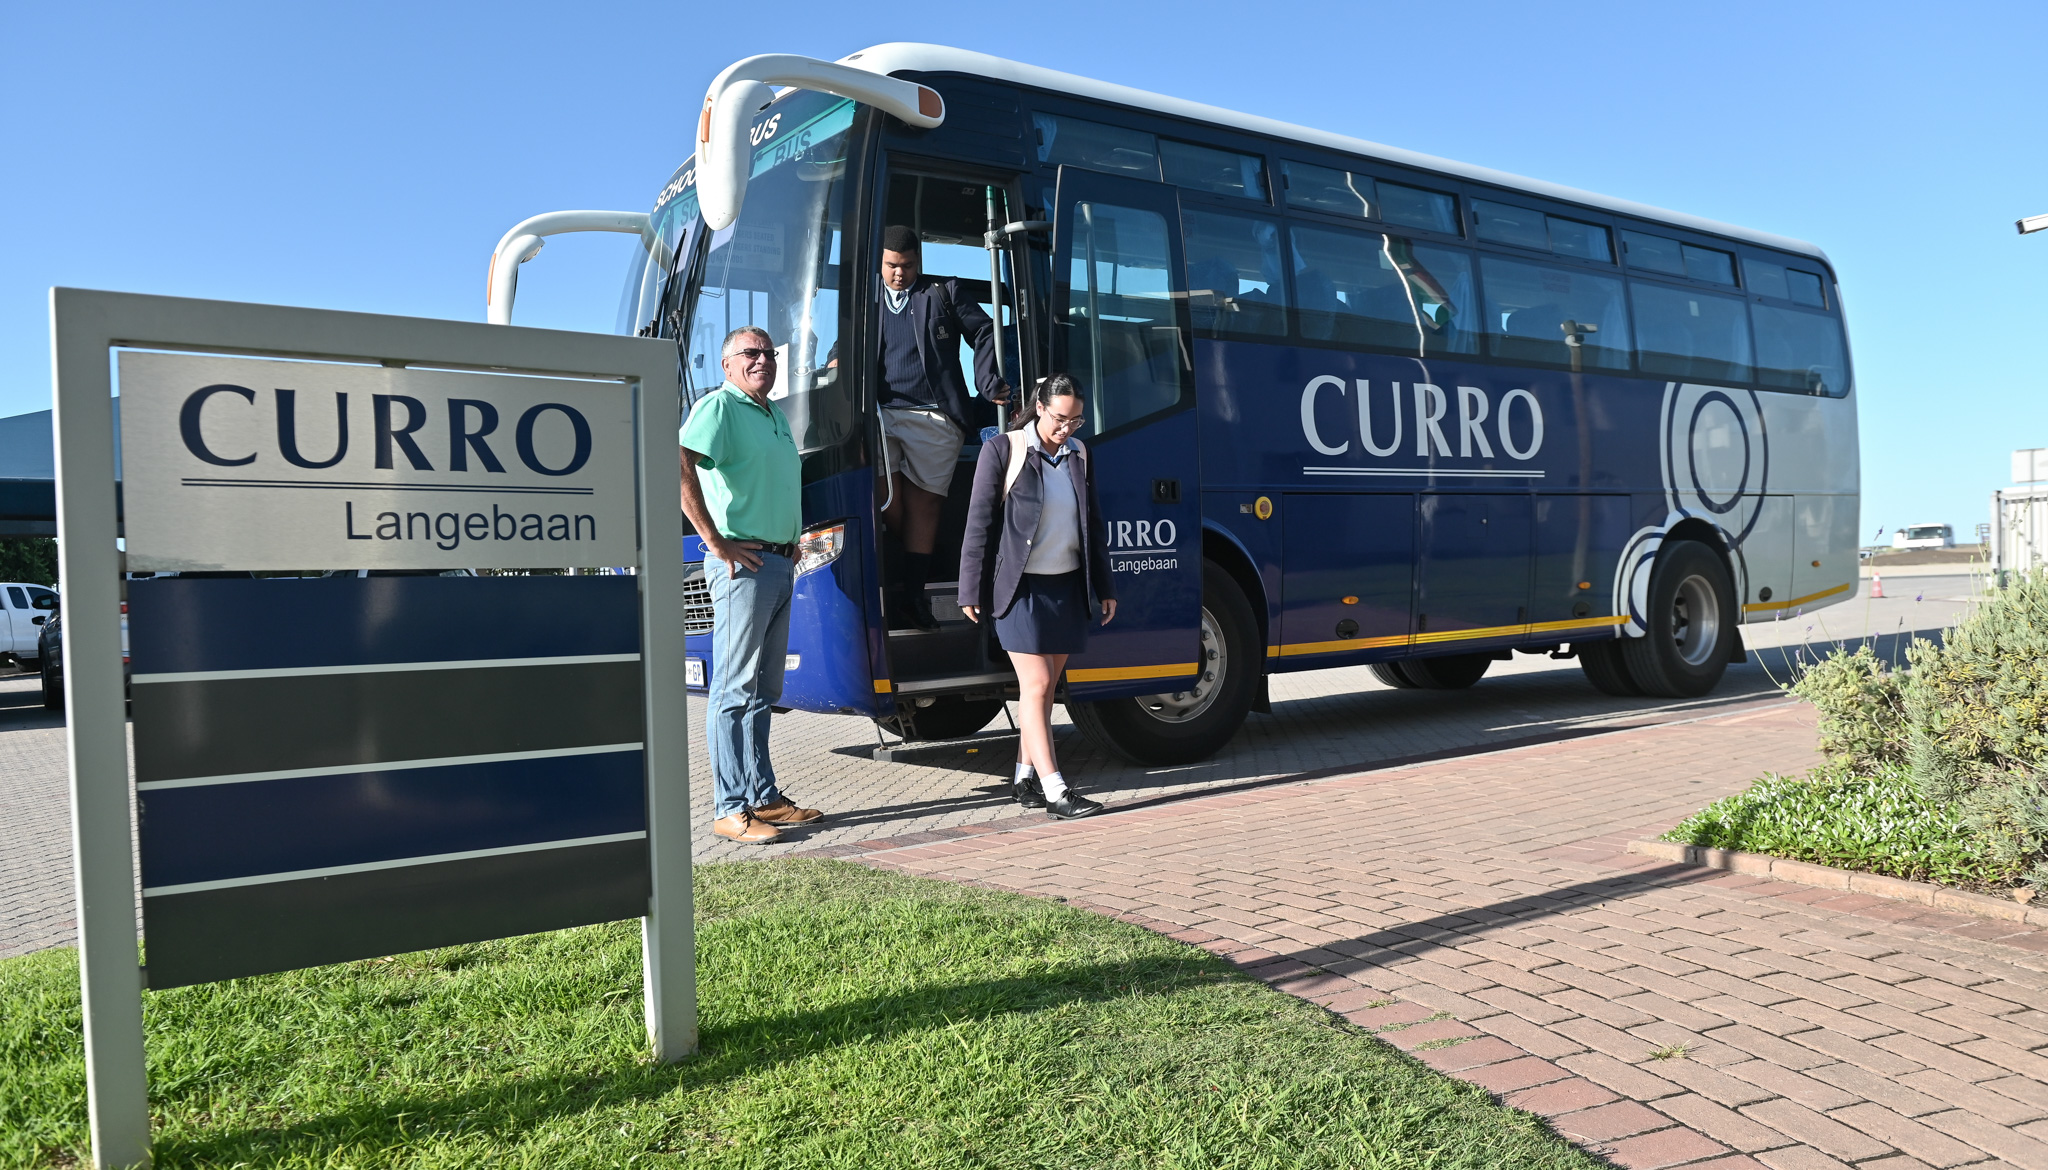 Curro Langebaan school transport